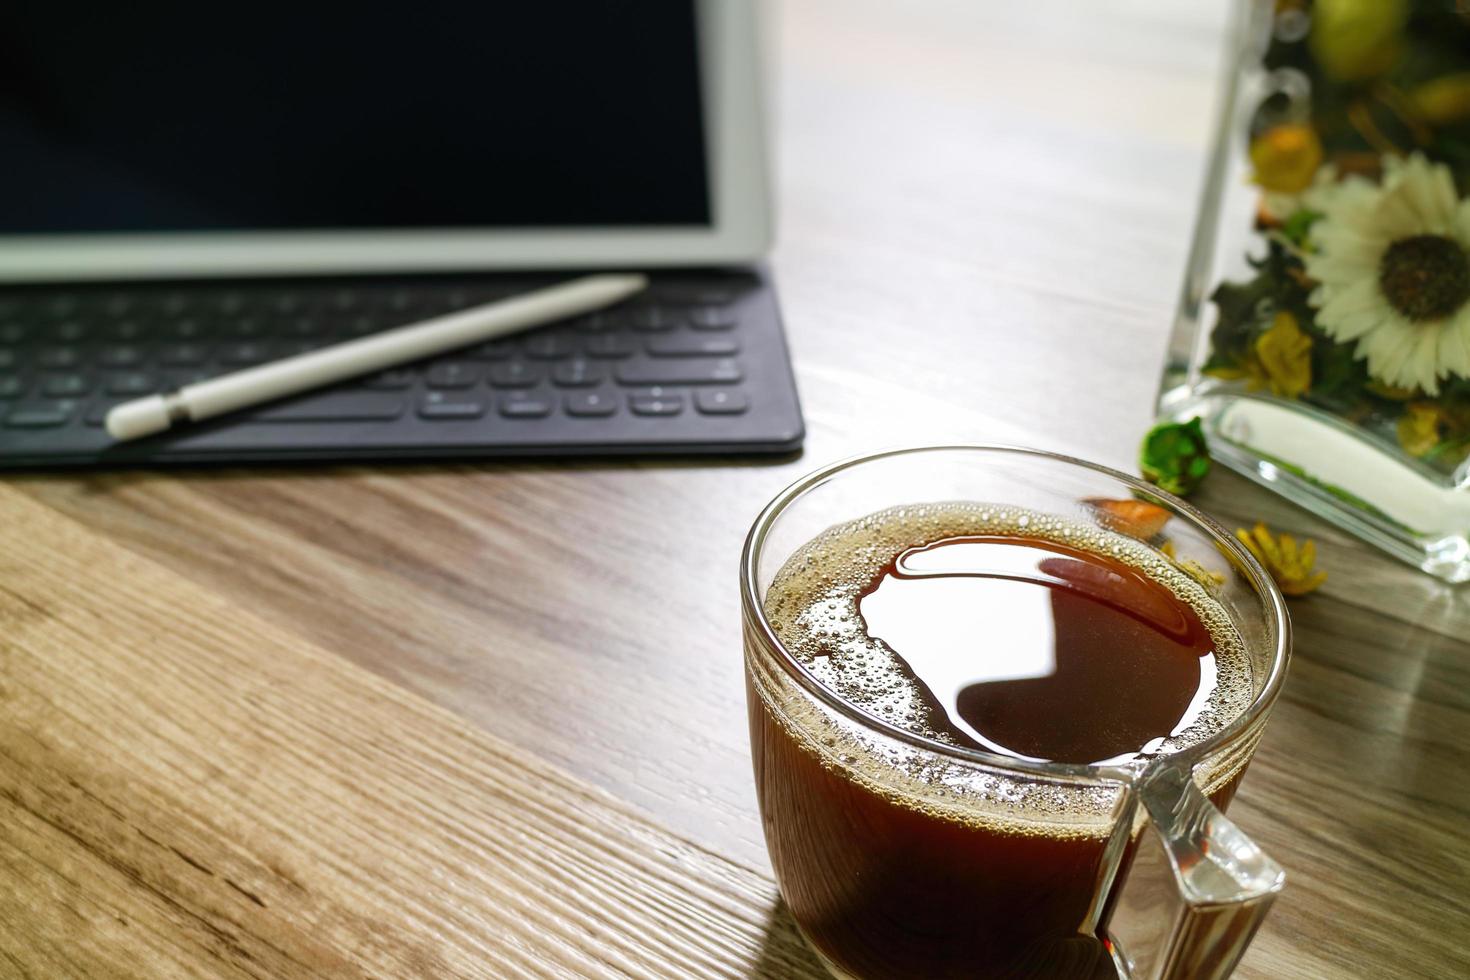 xícara de café ou chá e teclado inteligente dock de mesa digital, ervas de flores de vaso, caneta stylus na mesa de madeira, efeito de filtro foto